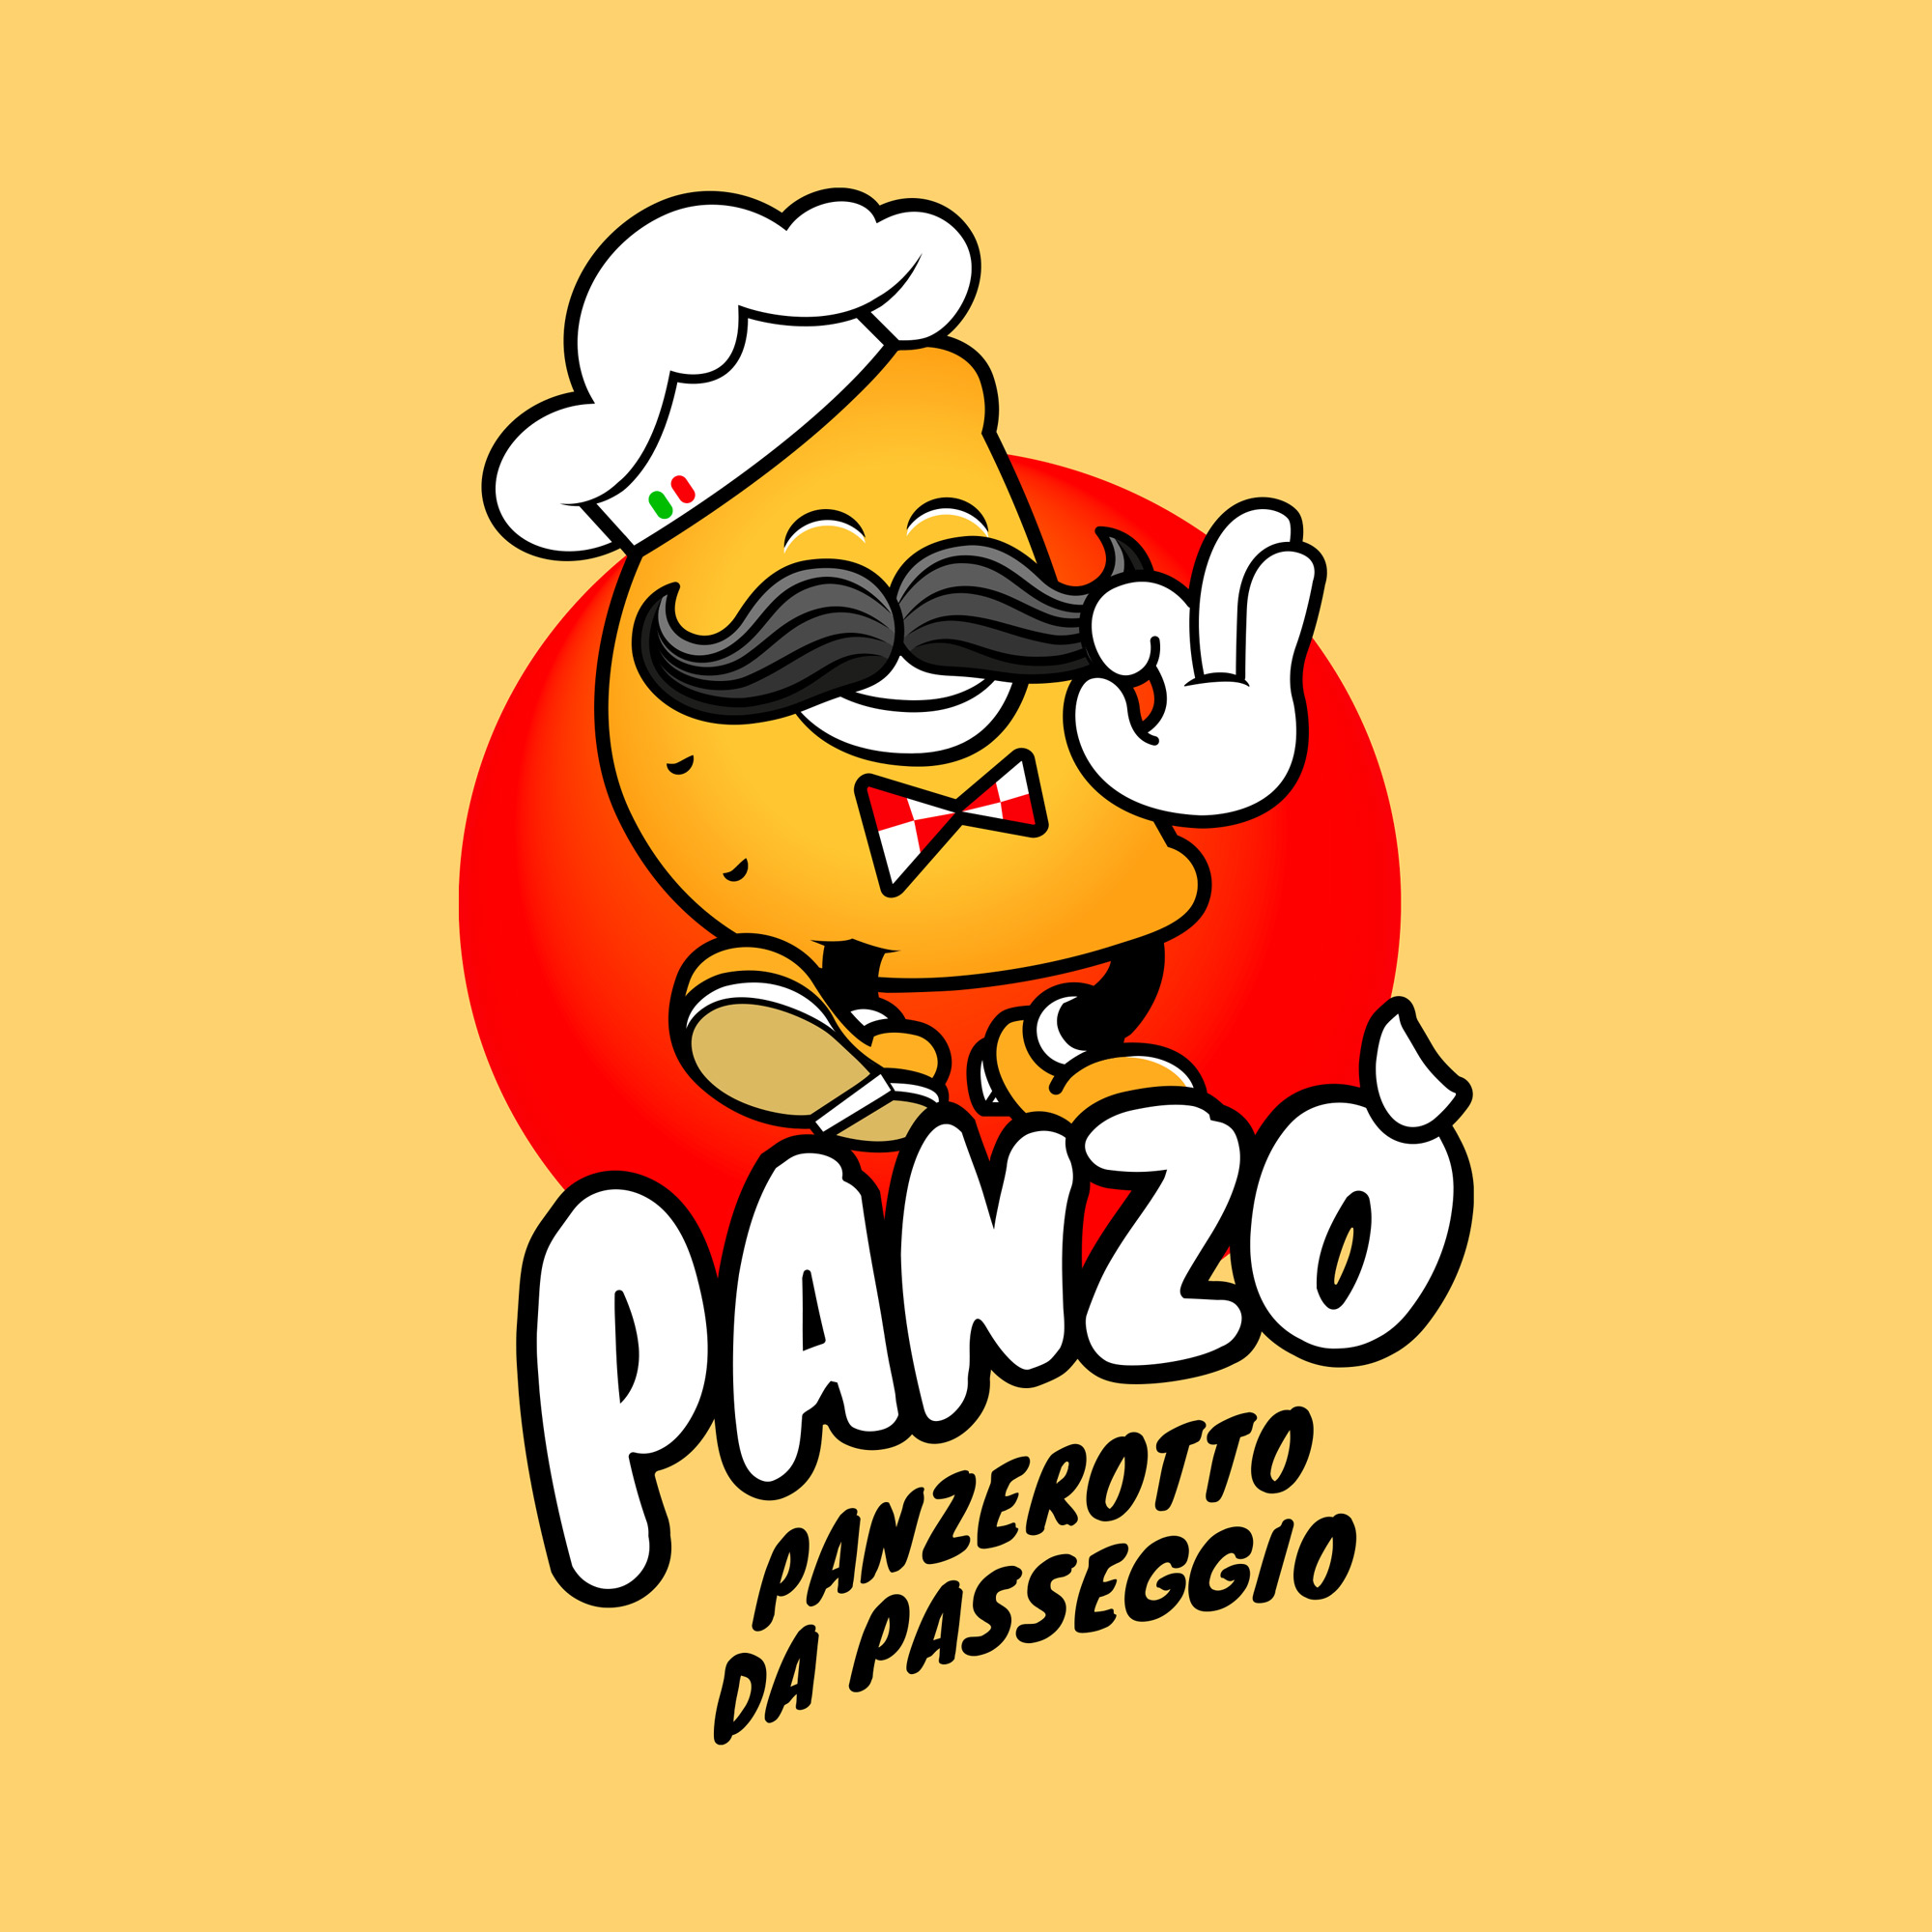 Panzò - Panzerotto da passeggio. logo by GGCA